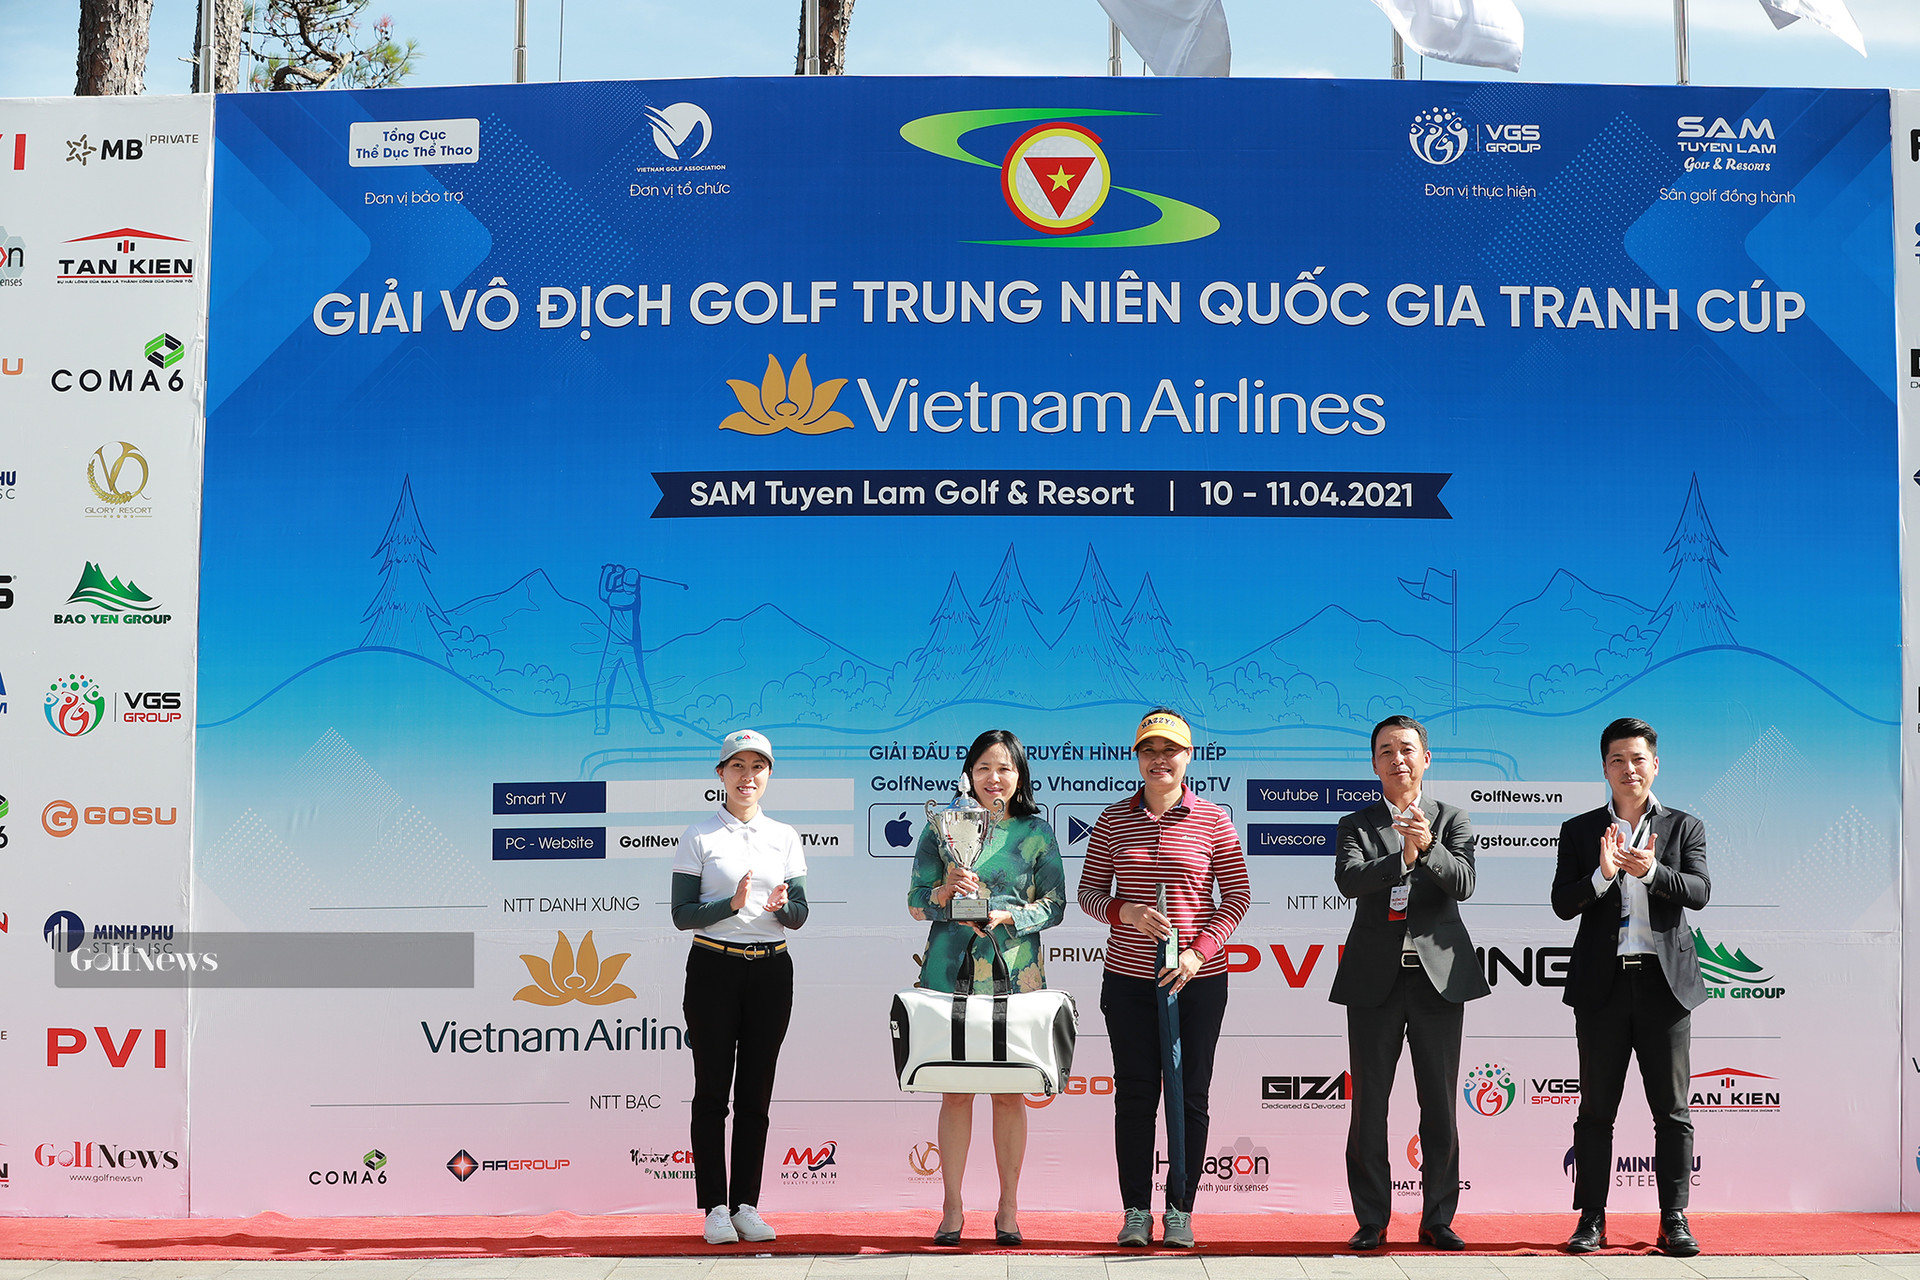 Kết quả chung cuộc giải Vô địch golf Trung niên Quốc gia tranh cúp Vietnam Airlines - Ảnh 6.